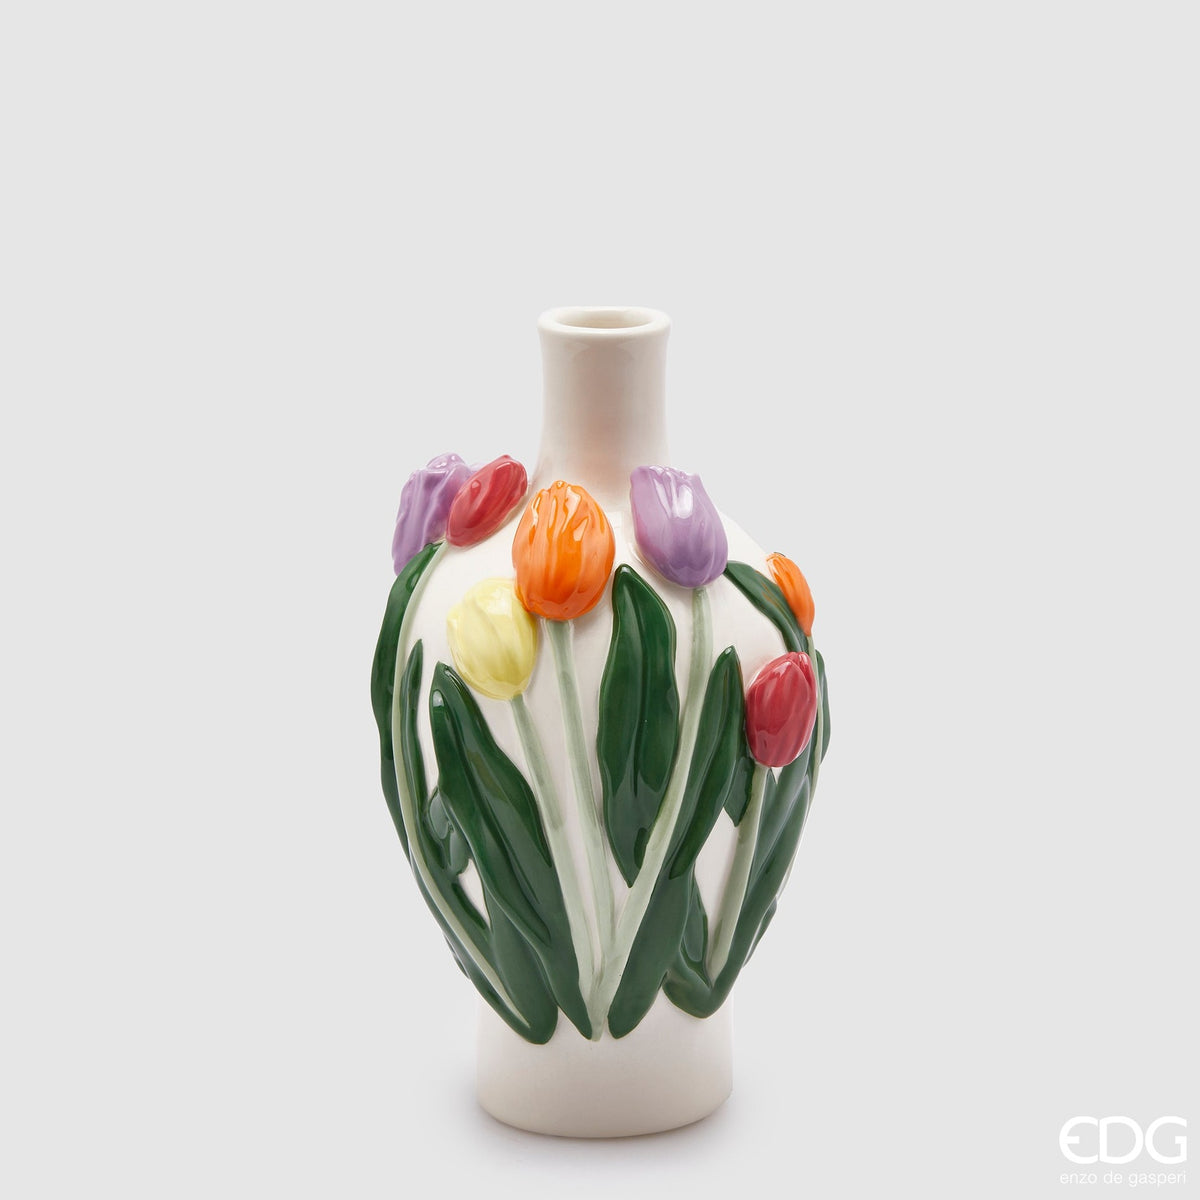 Edg - vaso con tulipani a goccia h 26cm | rohome